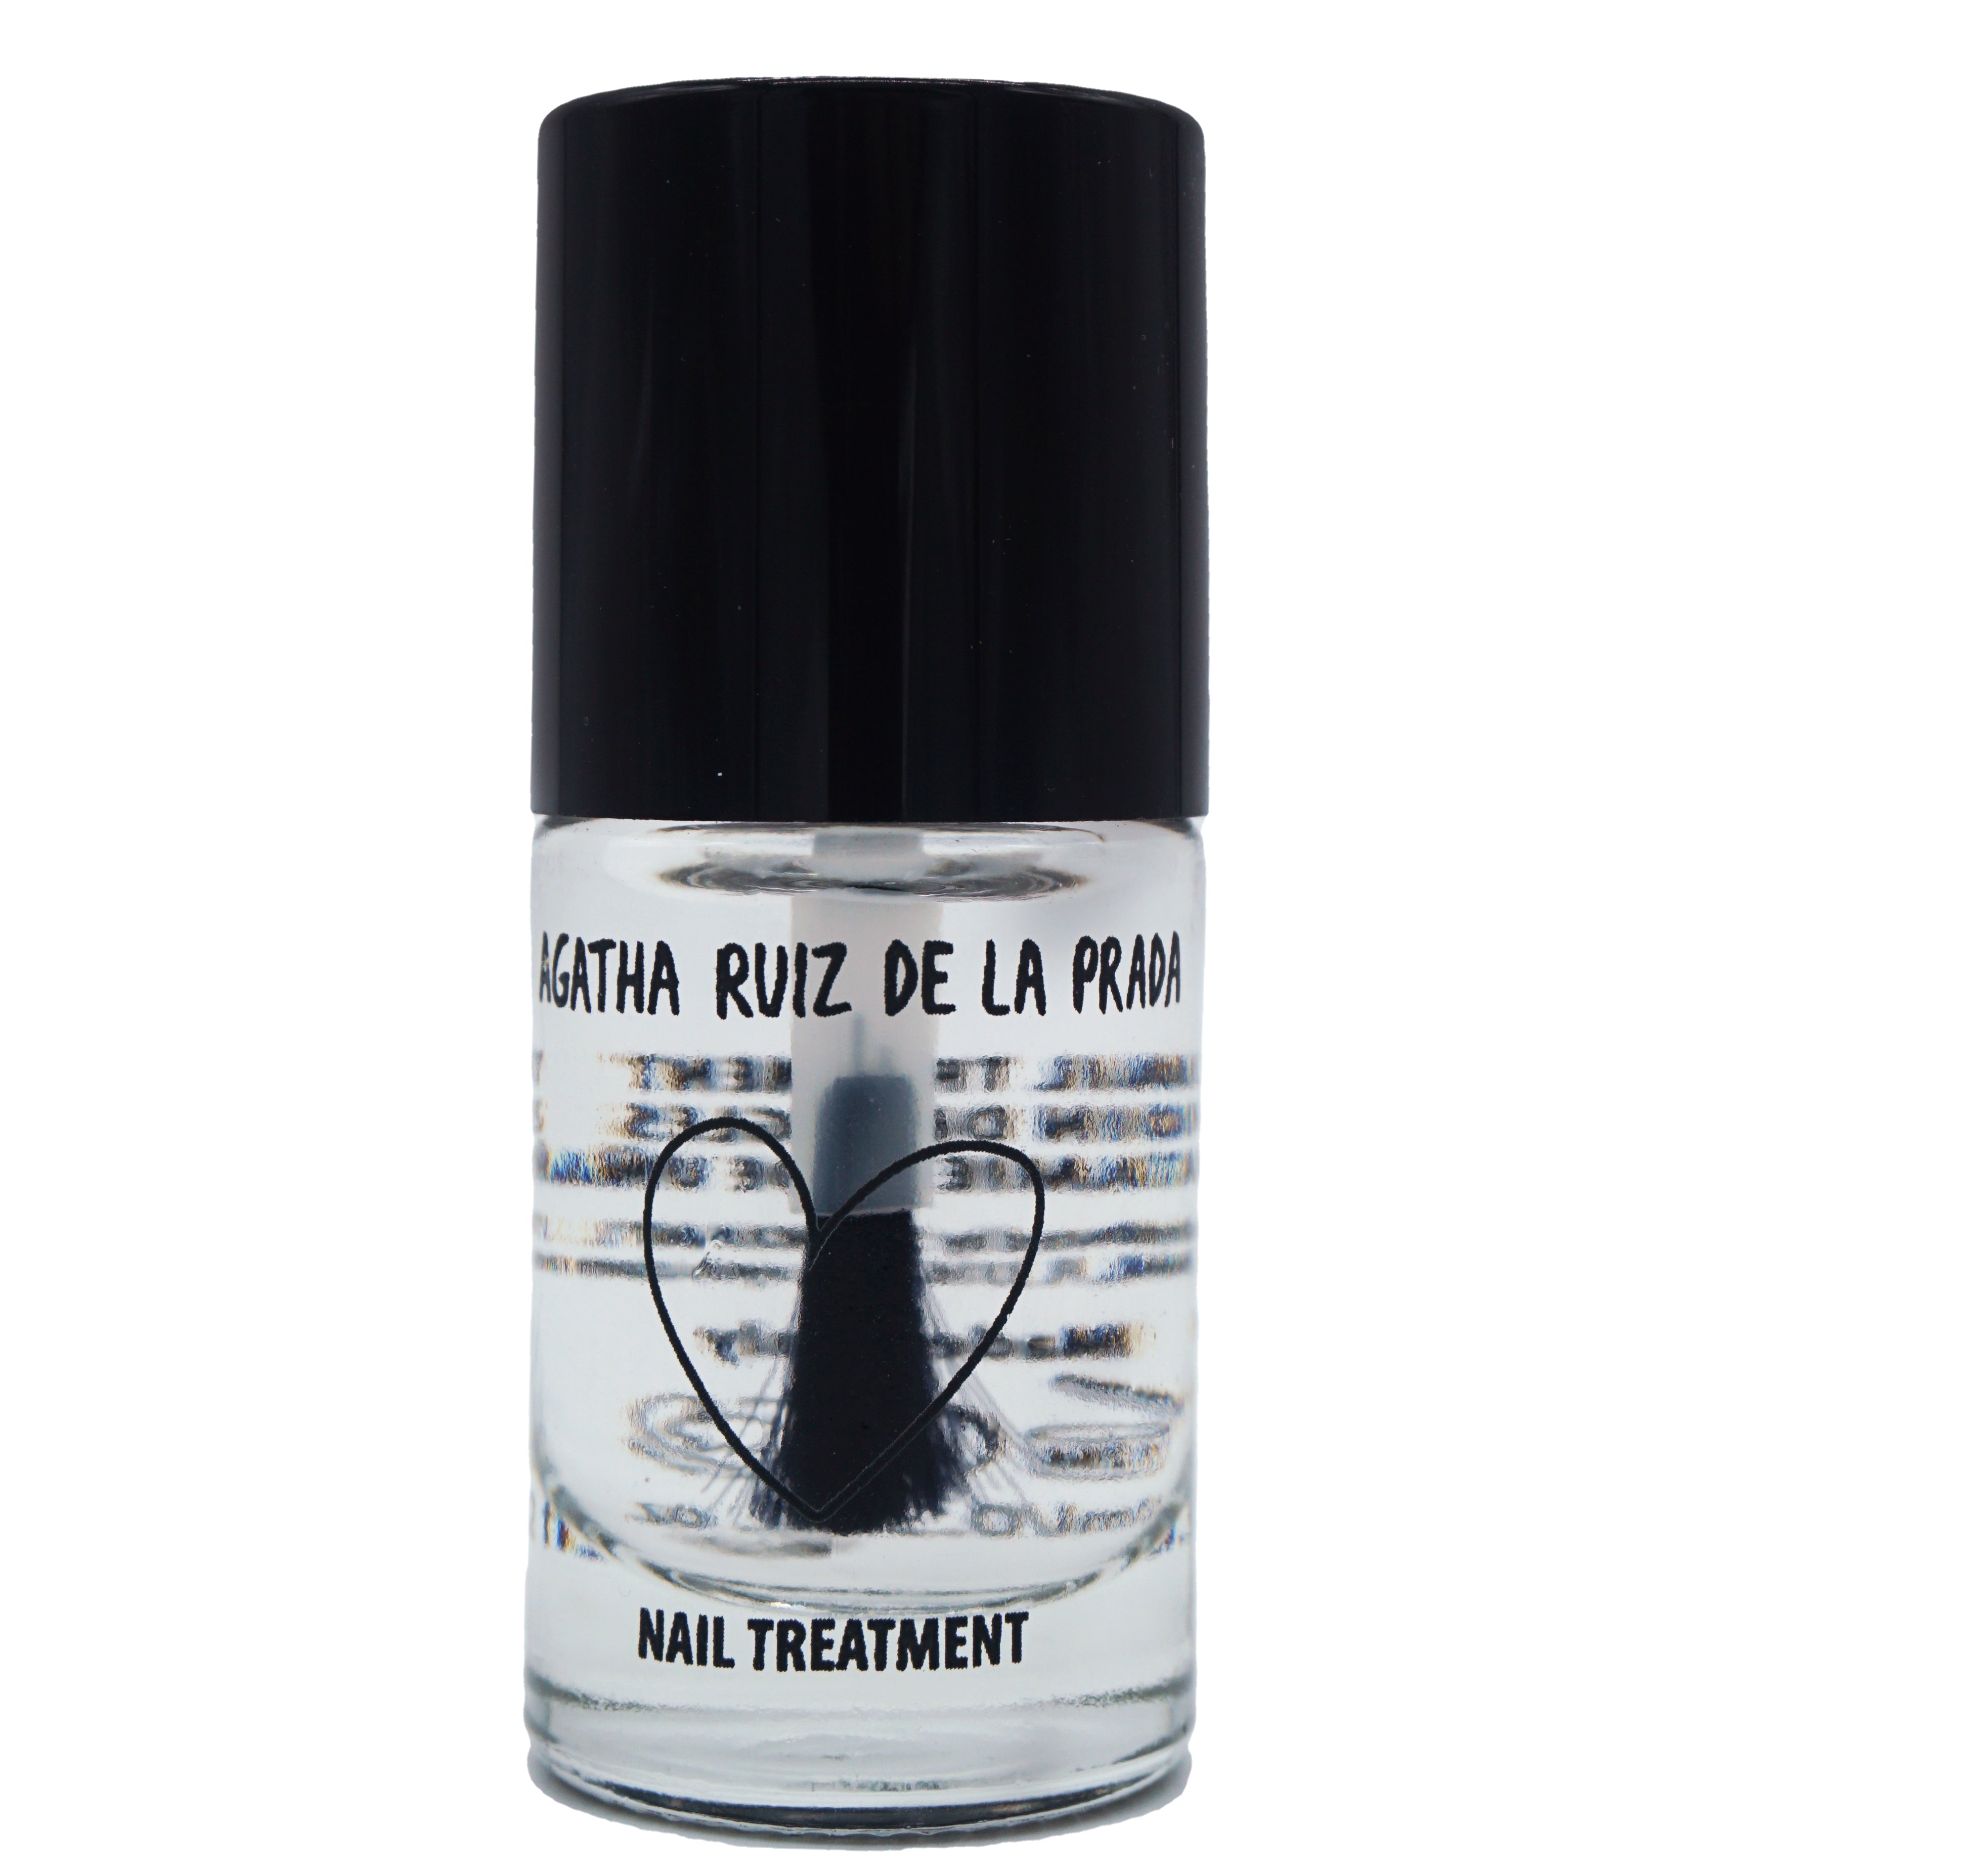 Agatha Ruiz de la Prada Nail Treatment Bottle Top Coat